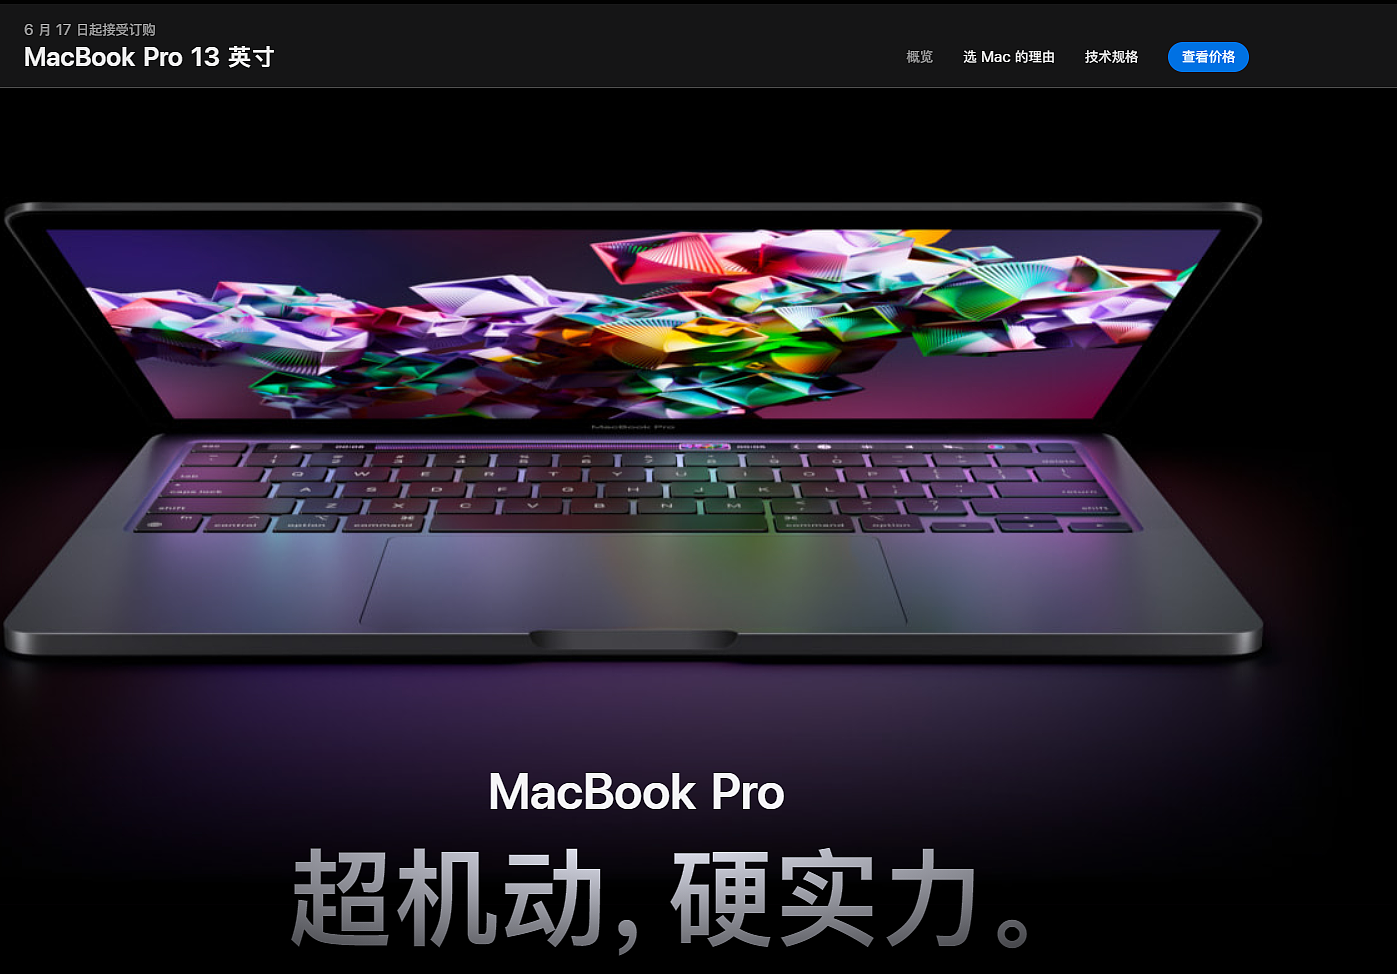 苹果 M2 MacBook Pro 13 英寸上市前推送 macOS Monterey 12.4 新版系统 - 1